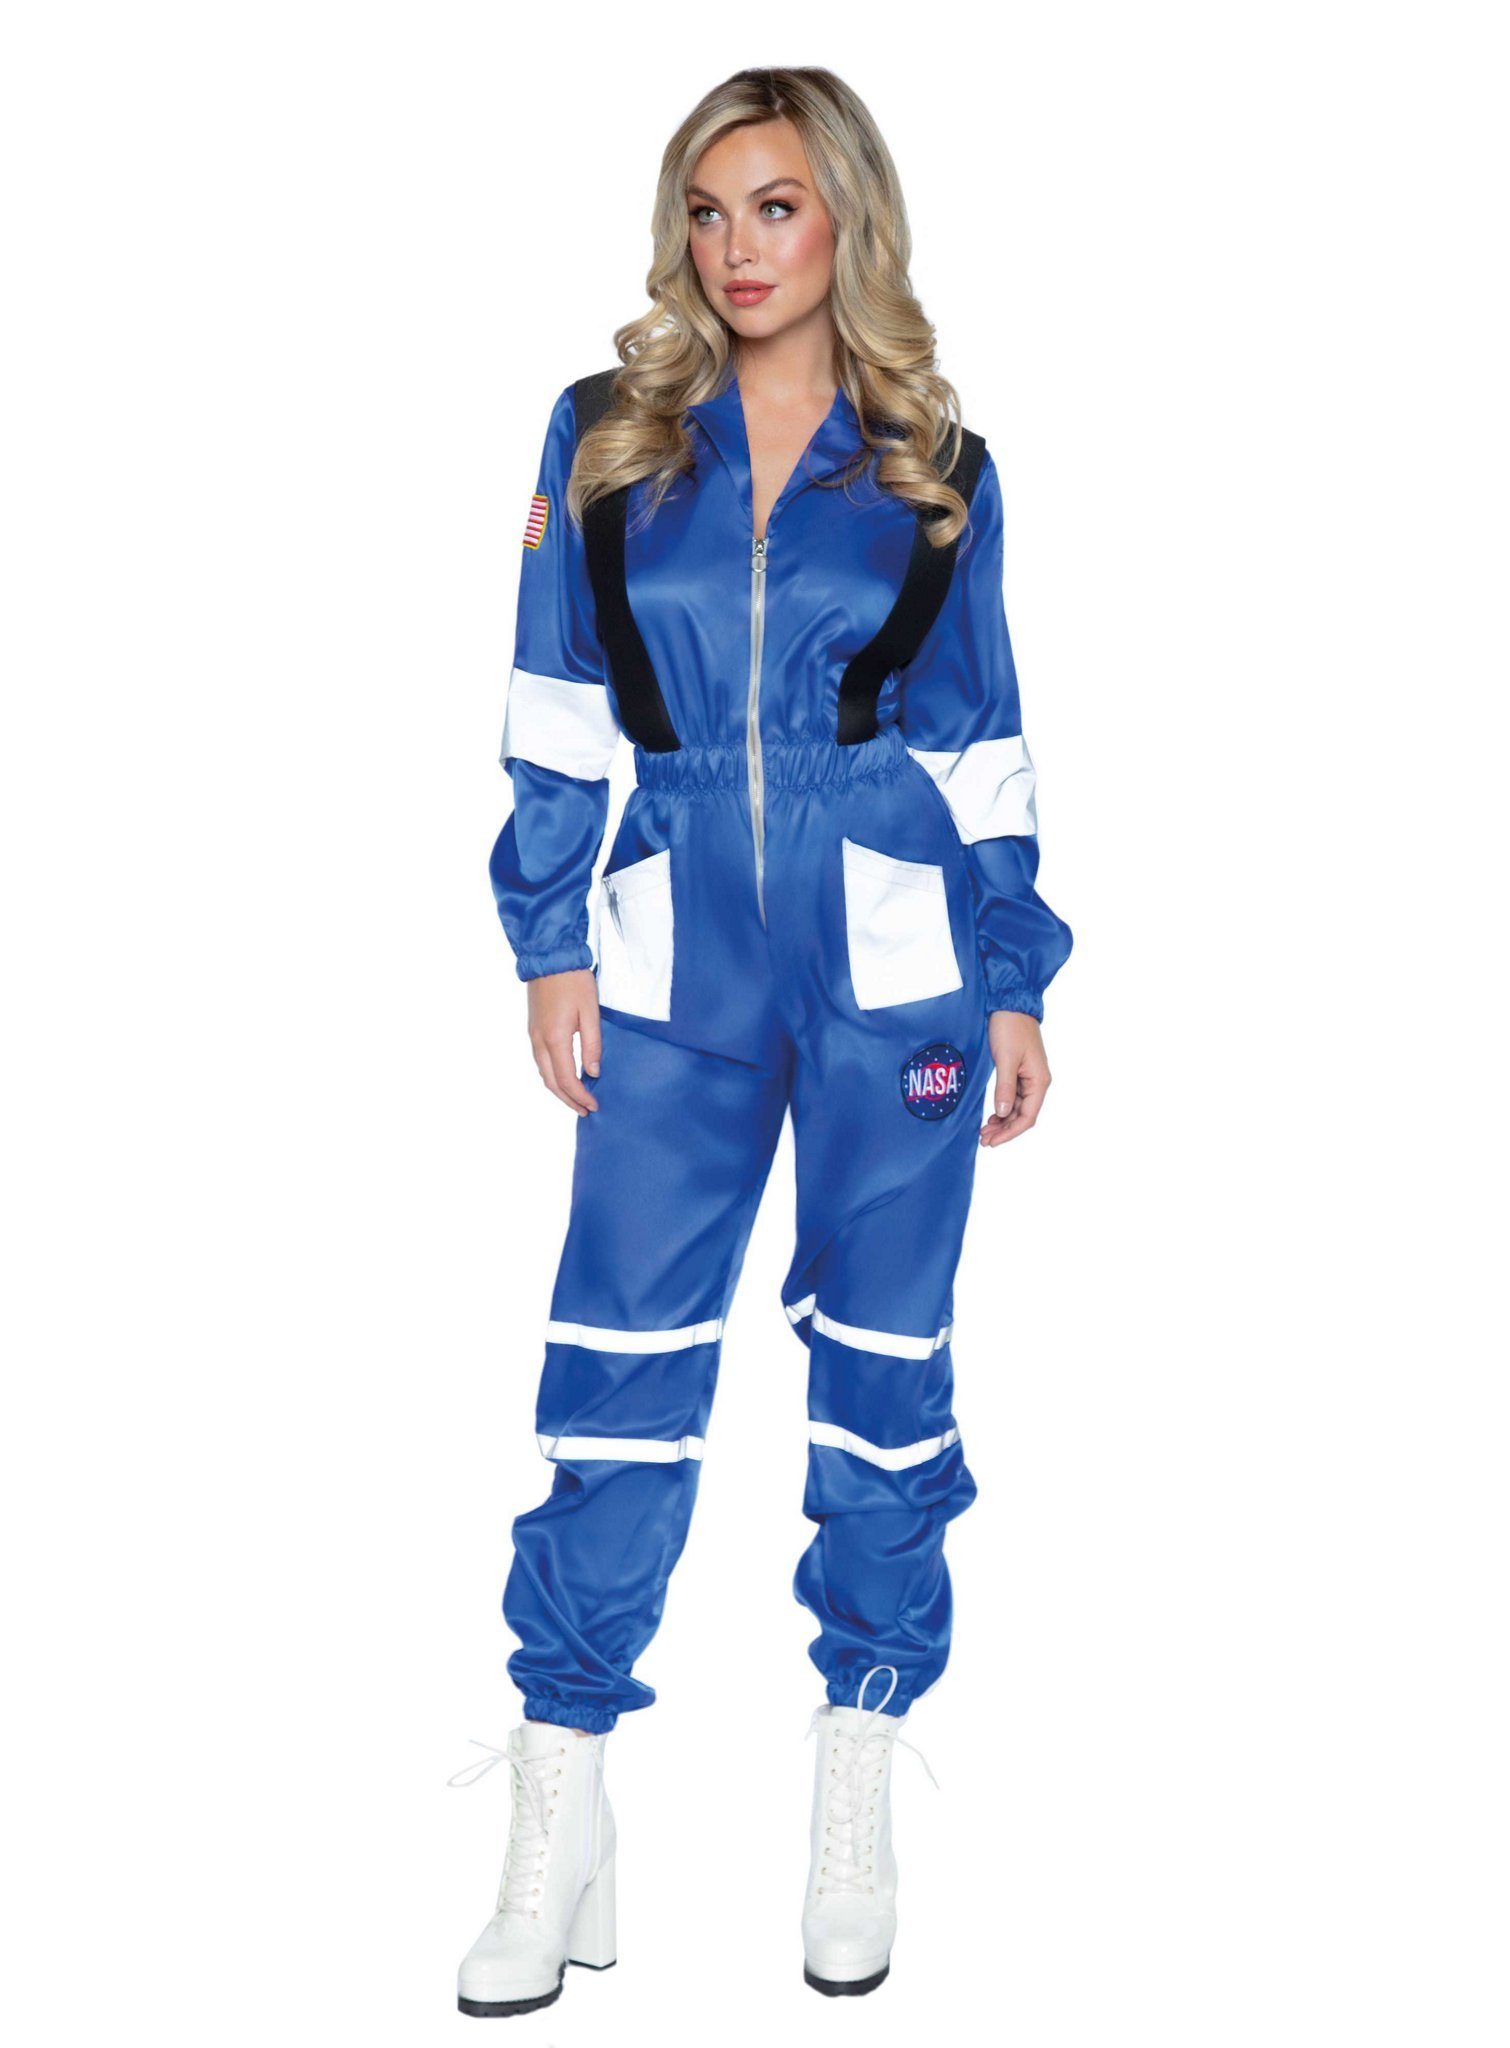 Leg Avenue Kostüm NASA Spacesuit, Overall für Deinen nächsten Weltraumspaziergang!